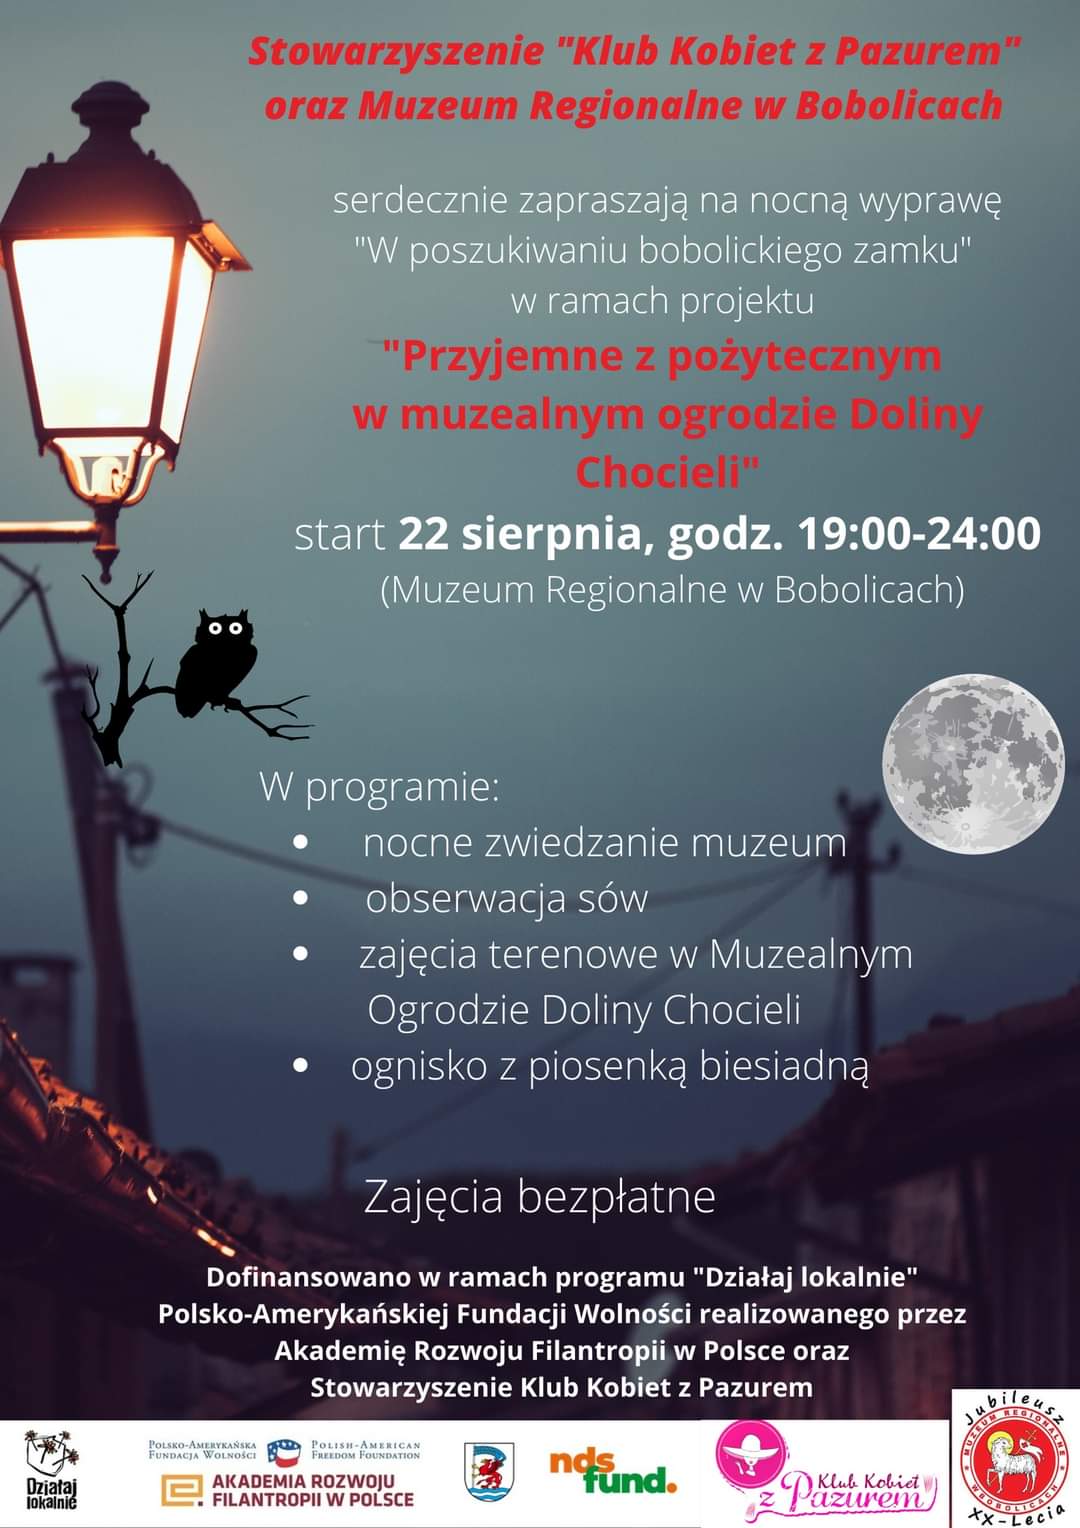 Plakat zapraszający na nocna wyprawę w poszukiwaniu bobolickiego zamku 22 sierpnia 2022